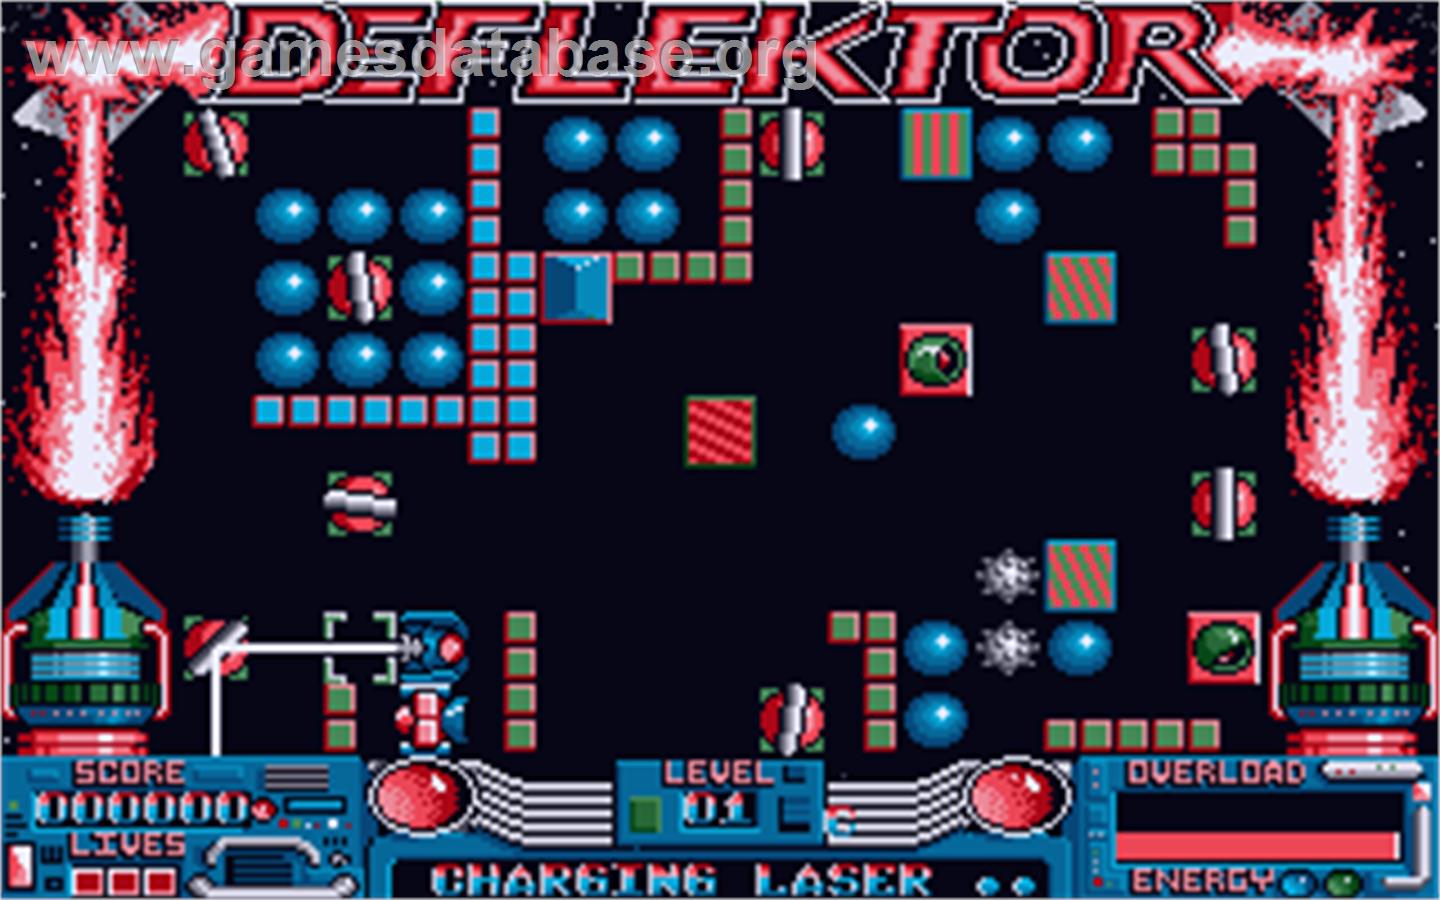 Deflektor - Atari ST - Artwork - In Game